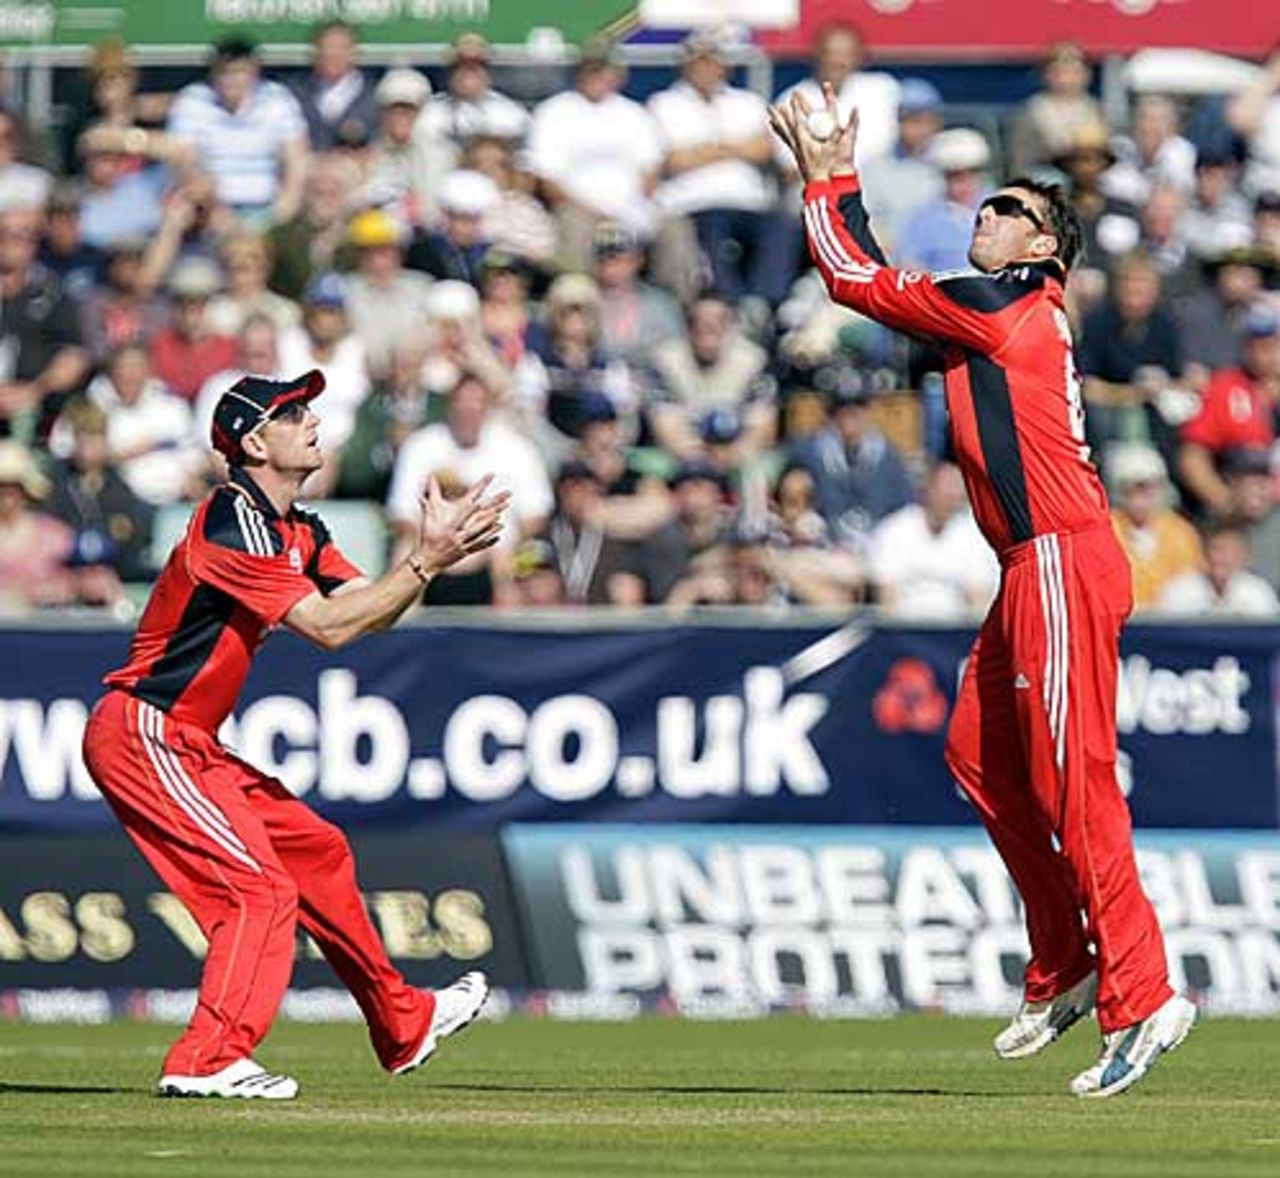 Graeme Swann steadies himself under James Hopes' leading edge, England v Australia, 7th ODI, Chester-le-Street, September 20, 2009